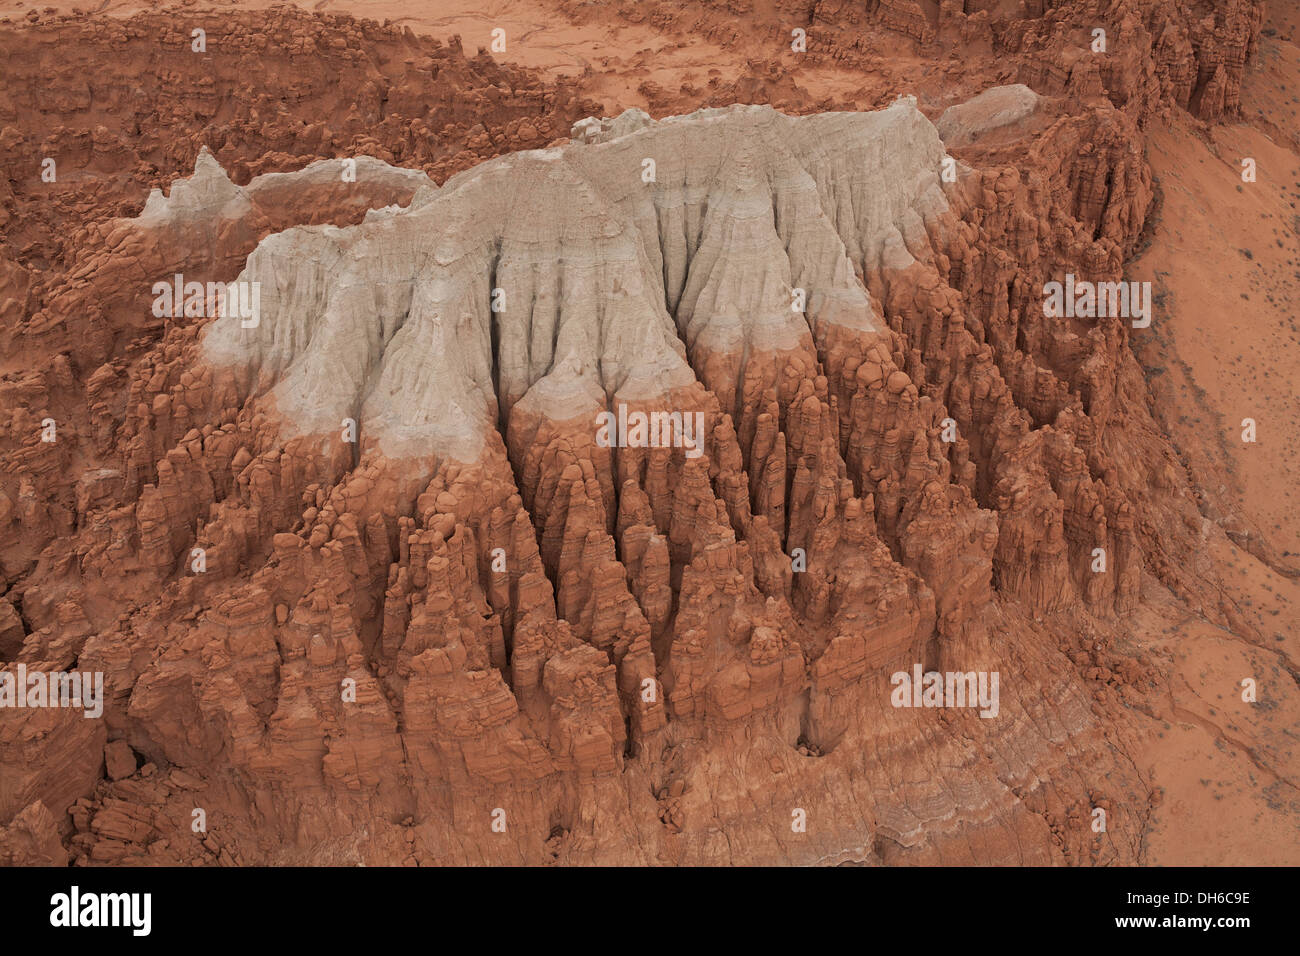 VUE AÉRIENNE.butte sédimentaire bicolore.Formation géologique près du parc national de Goblin Valley, comté d'Emery, Utah, États-Unis. Banque D'Images